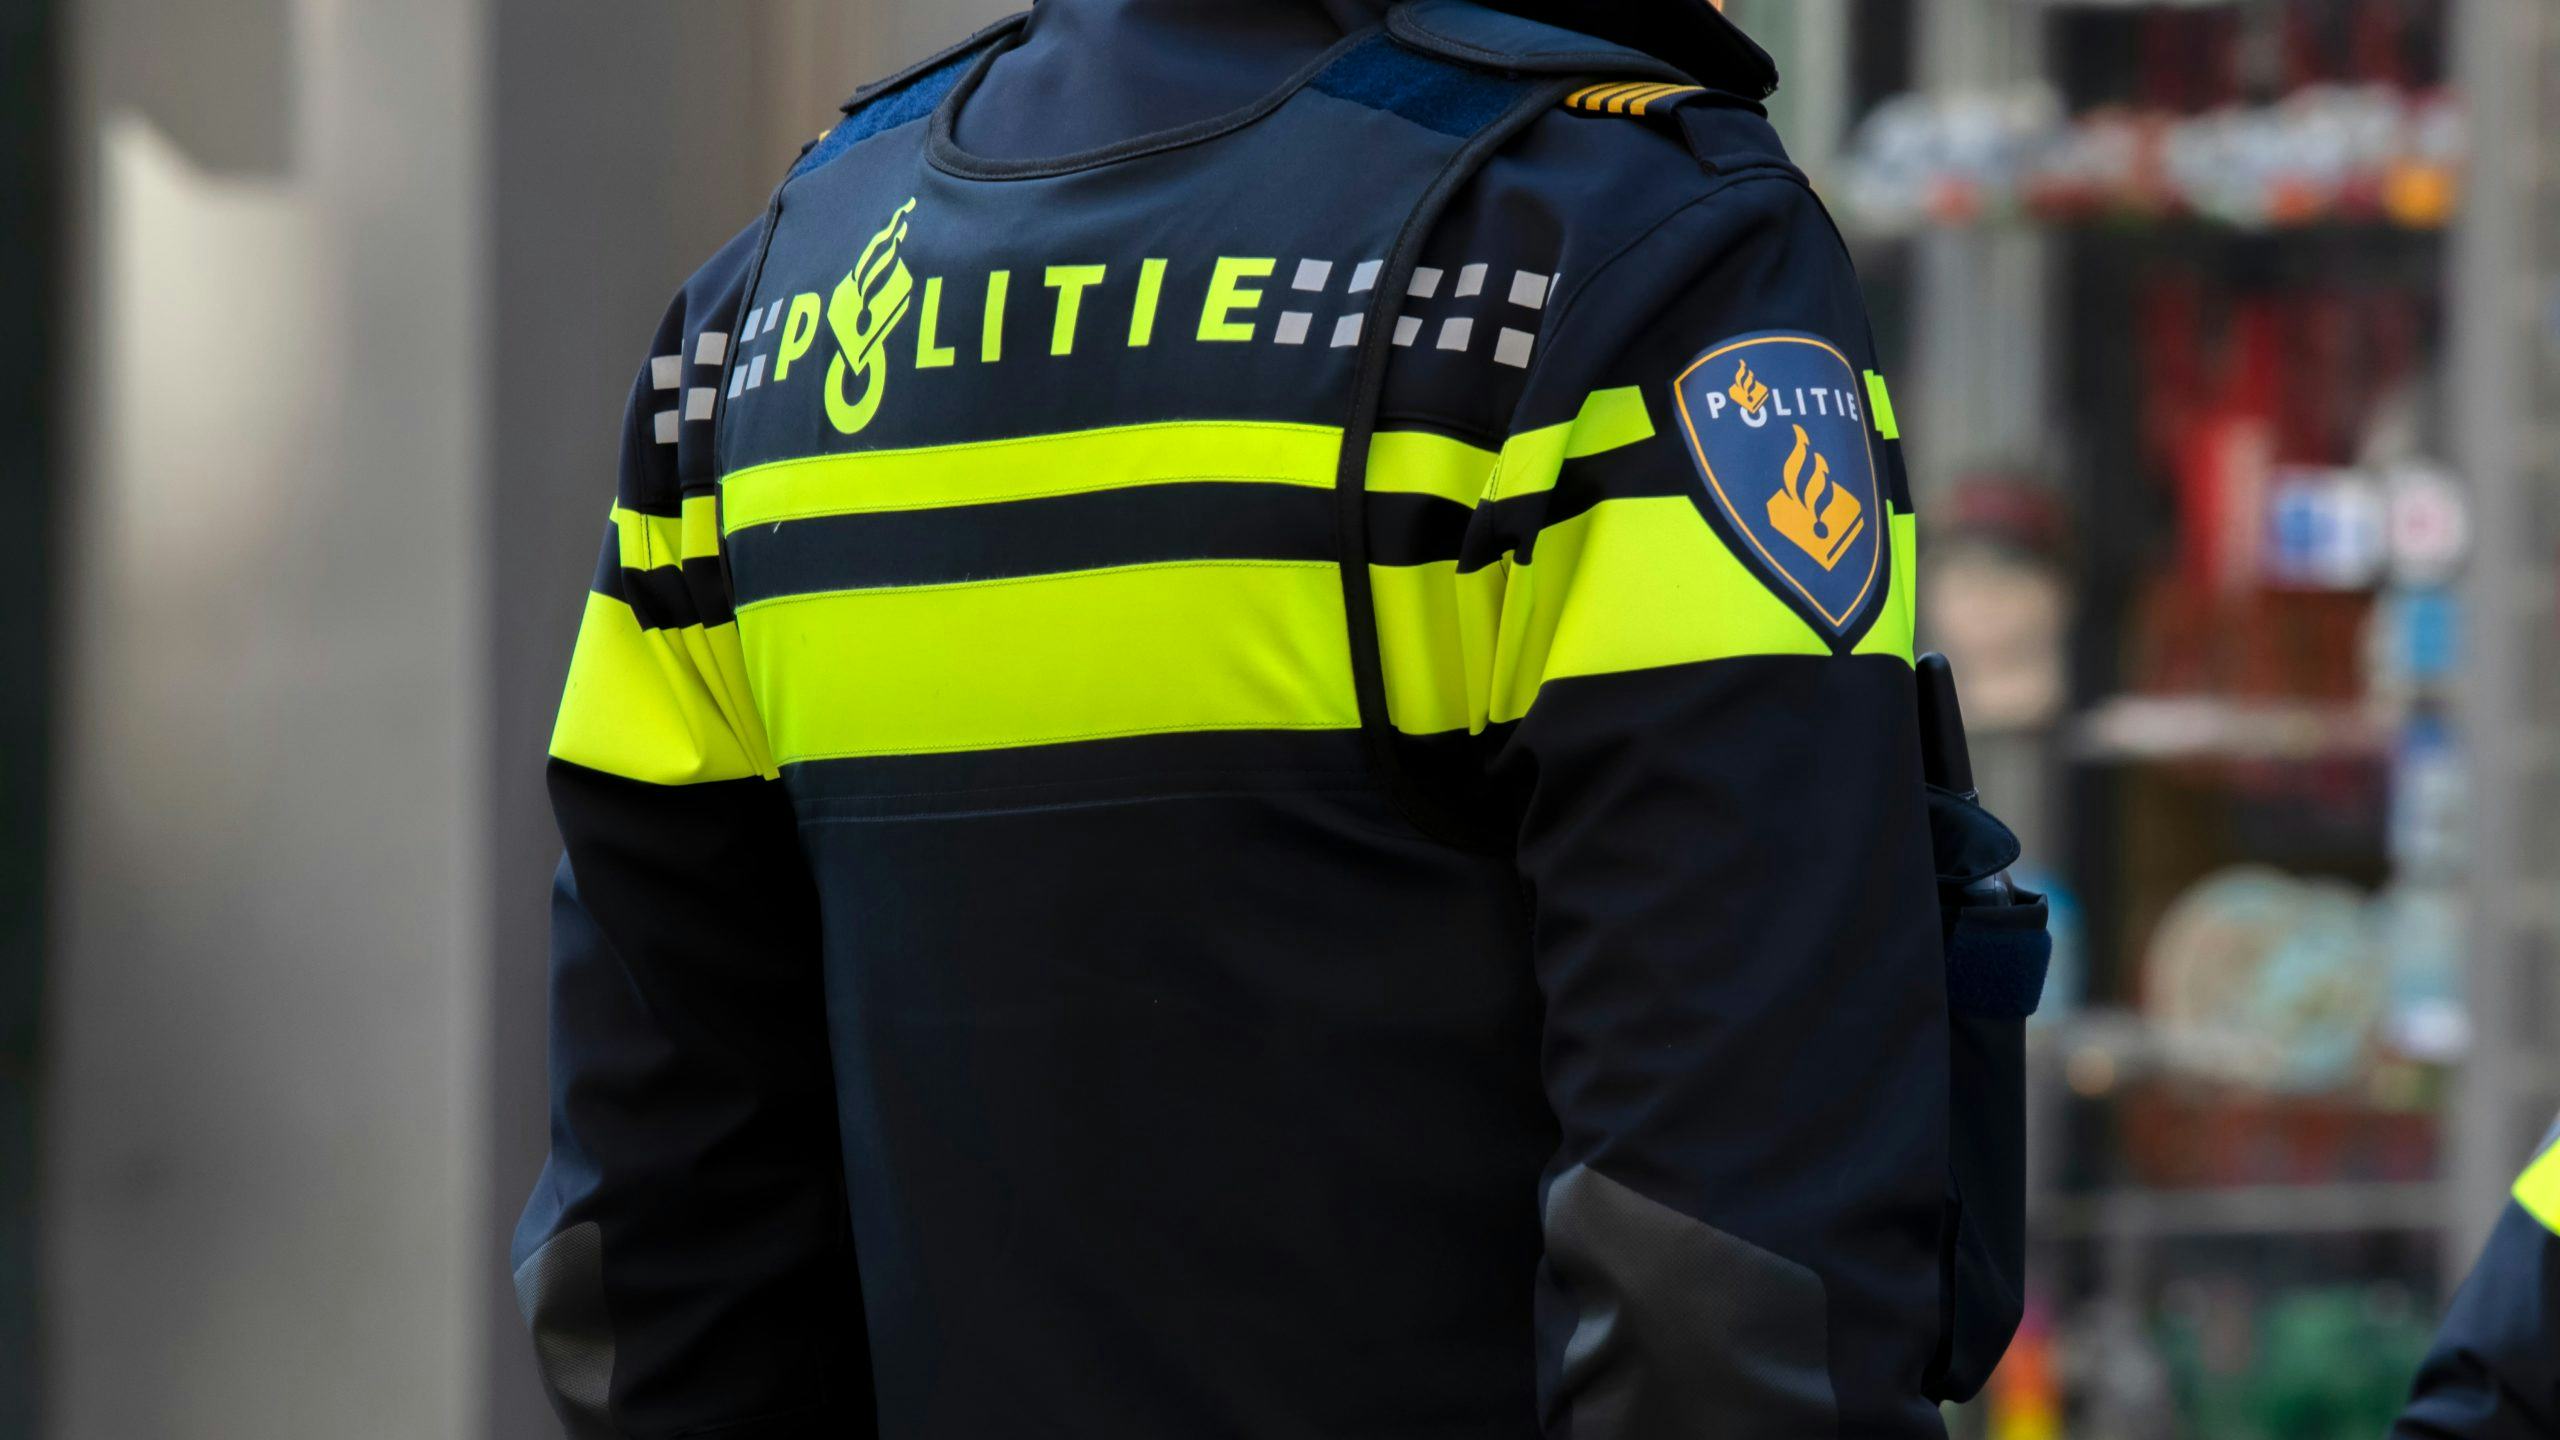 Afhaalrestaurant in Rotterdam beschoten, geen gewonden